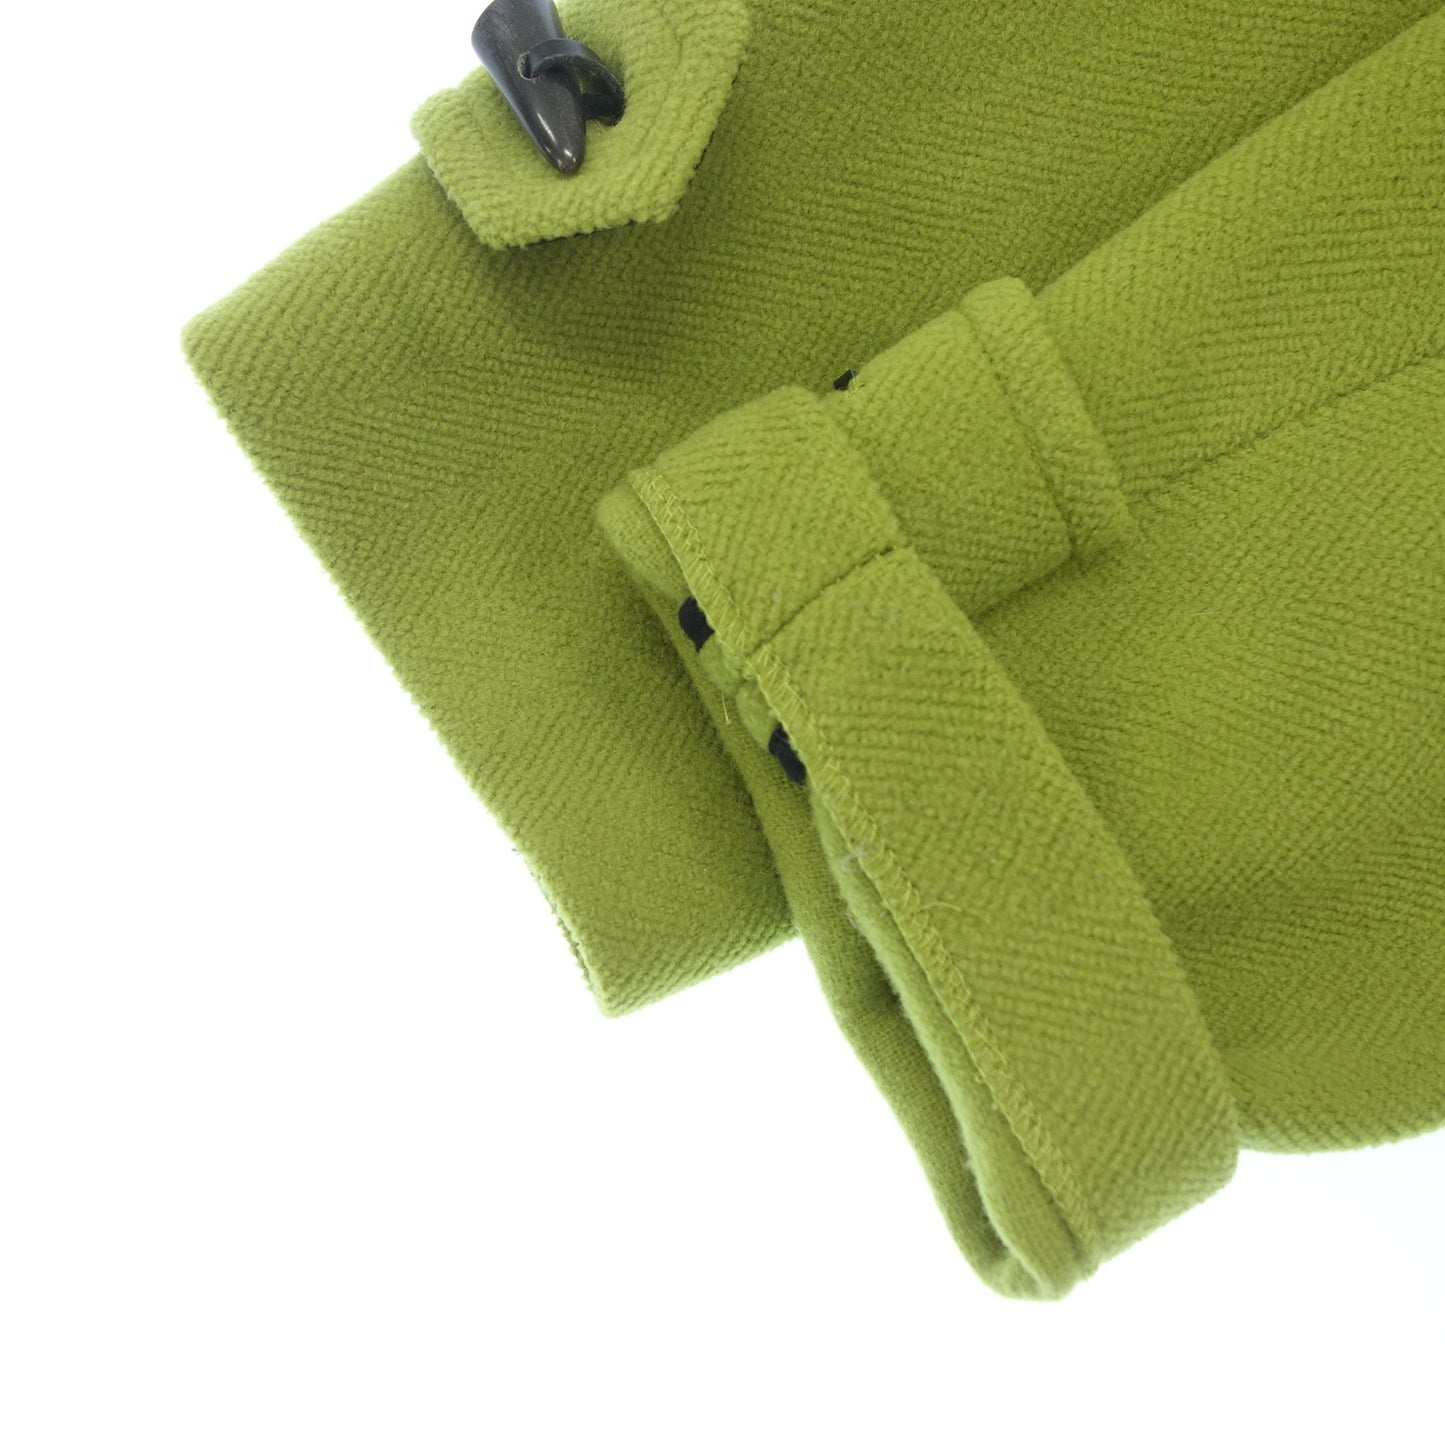 二手◆Burberry London 粗呢大衣 100% 羊毛纽扣 英国制造 女式 绿色 S 码 BURBERRY LONDON [AFA11] 